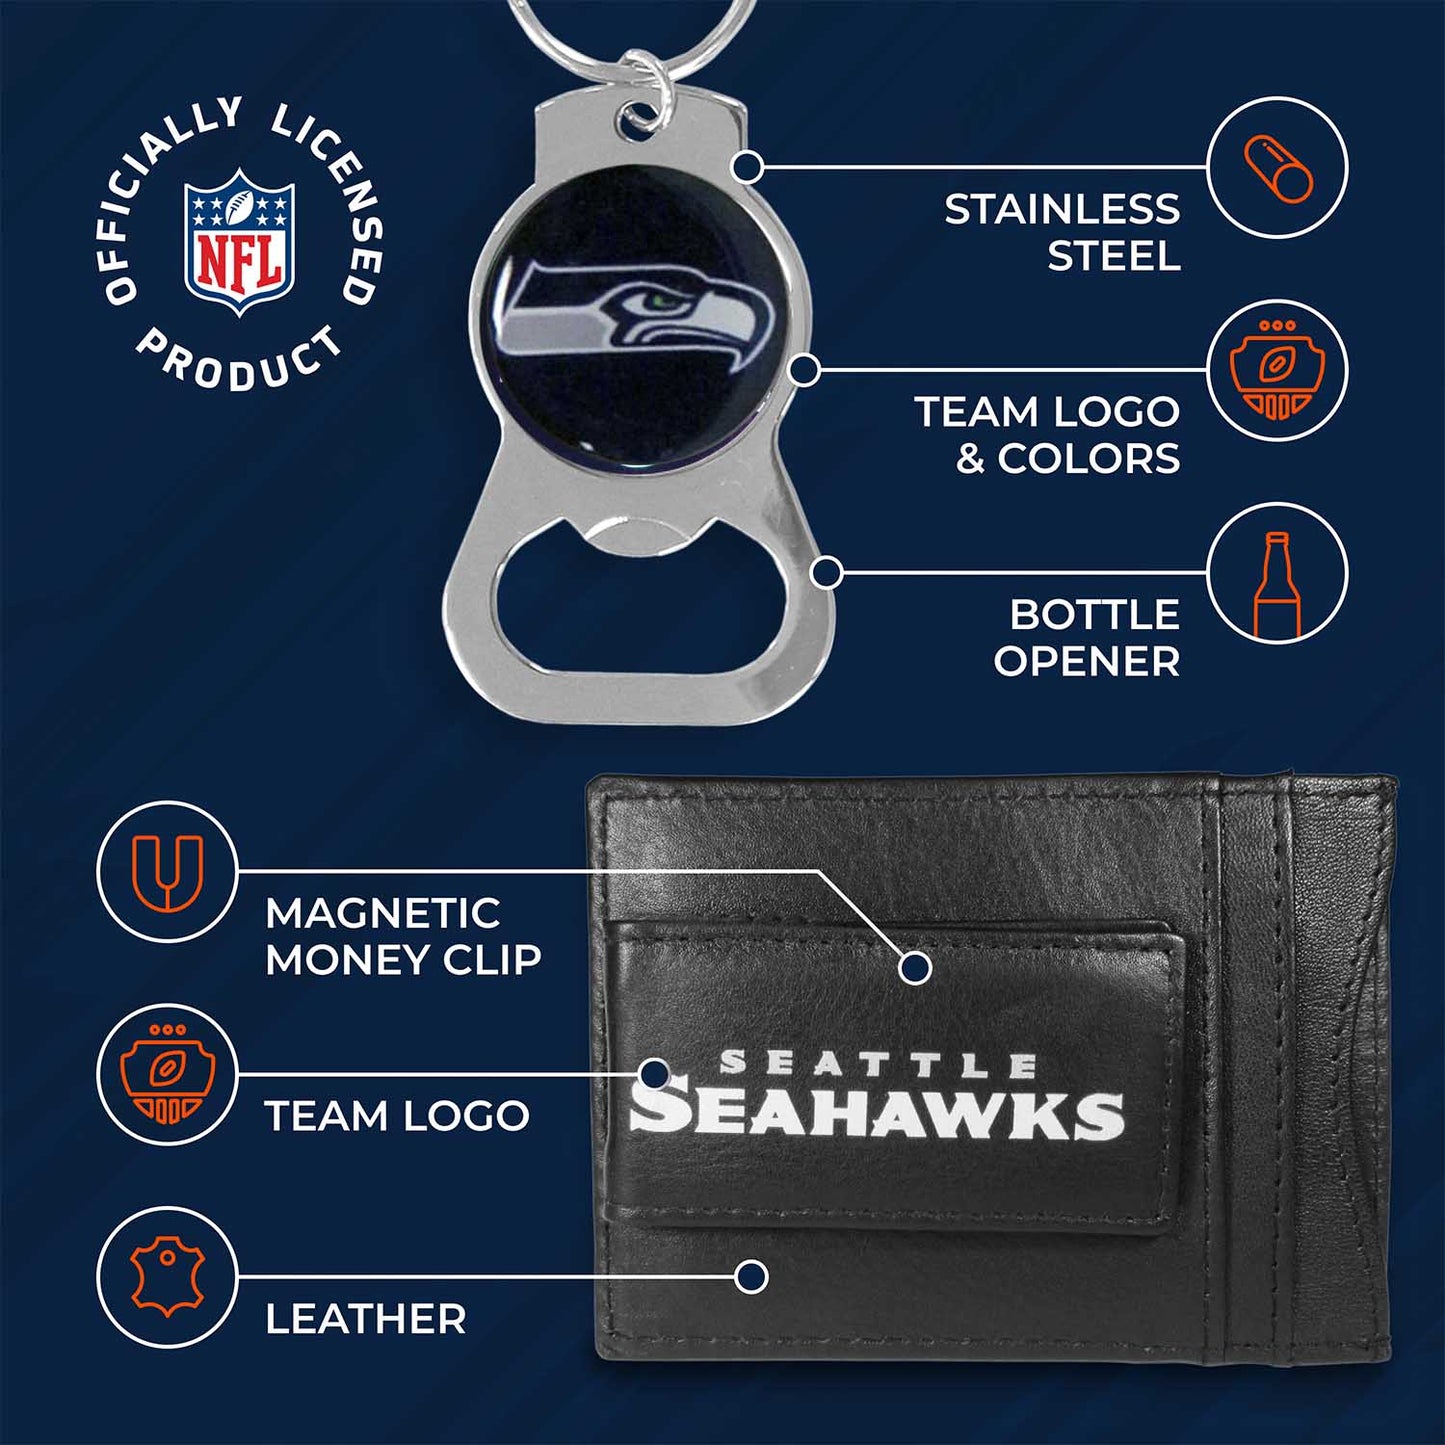 Seattle Seahawks NFL Bottle Opener Keychain Bundle - Black